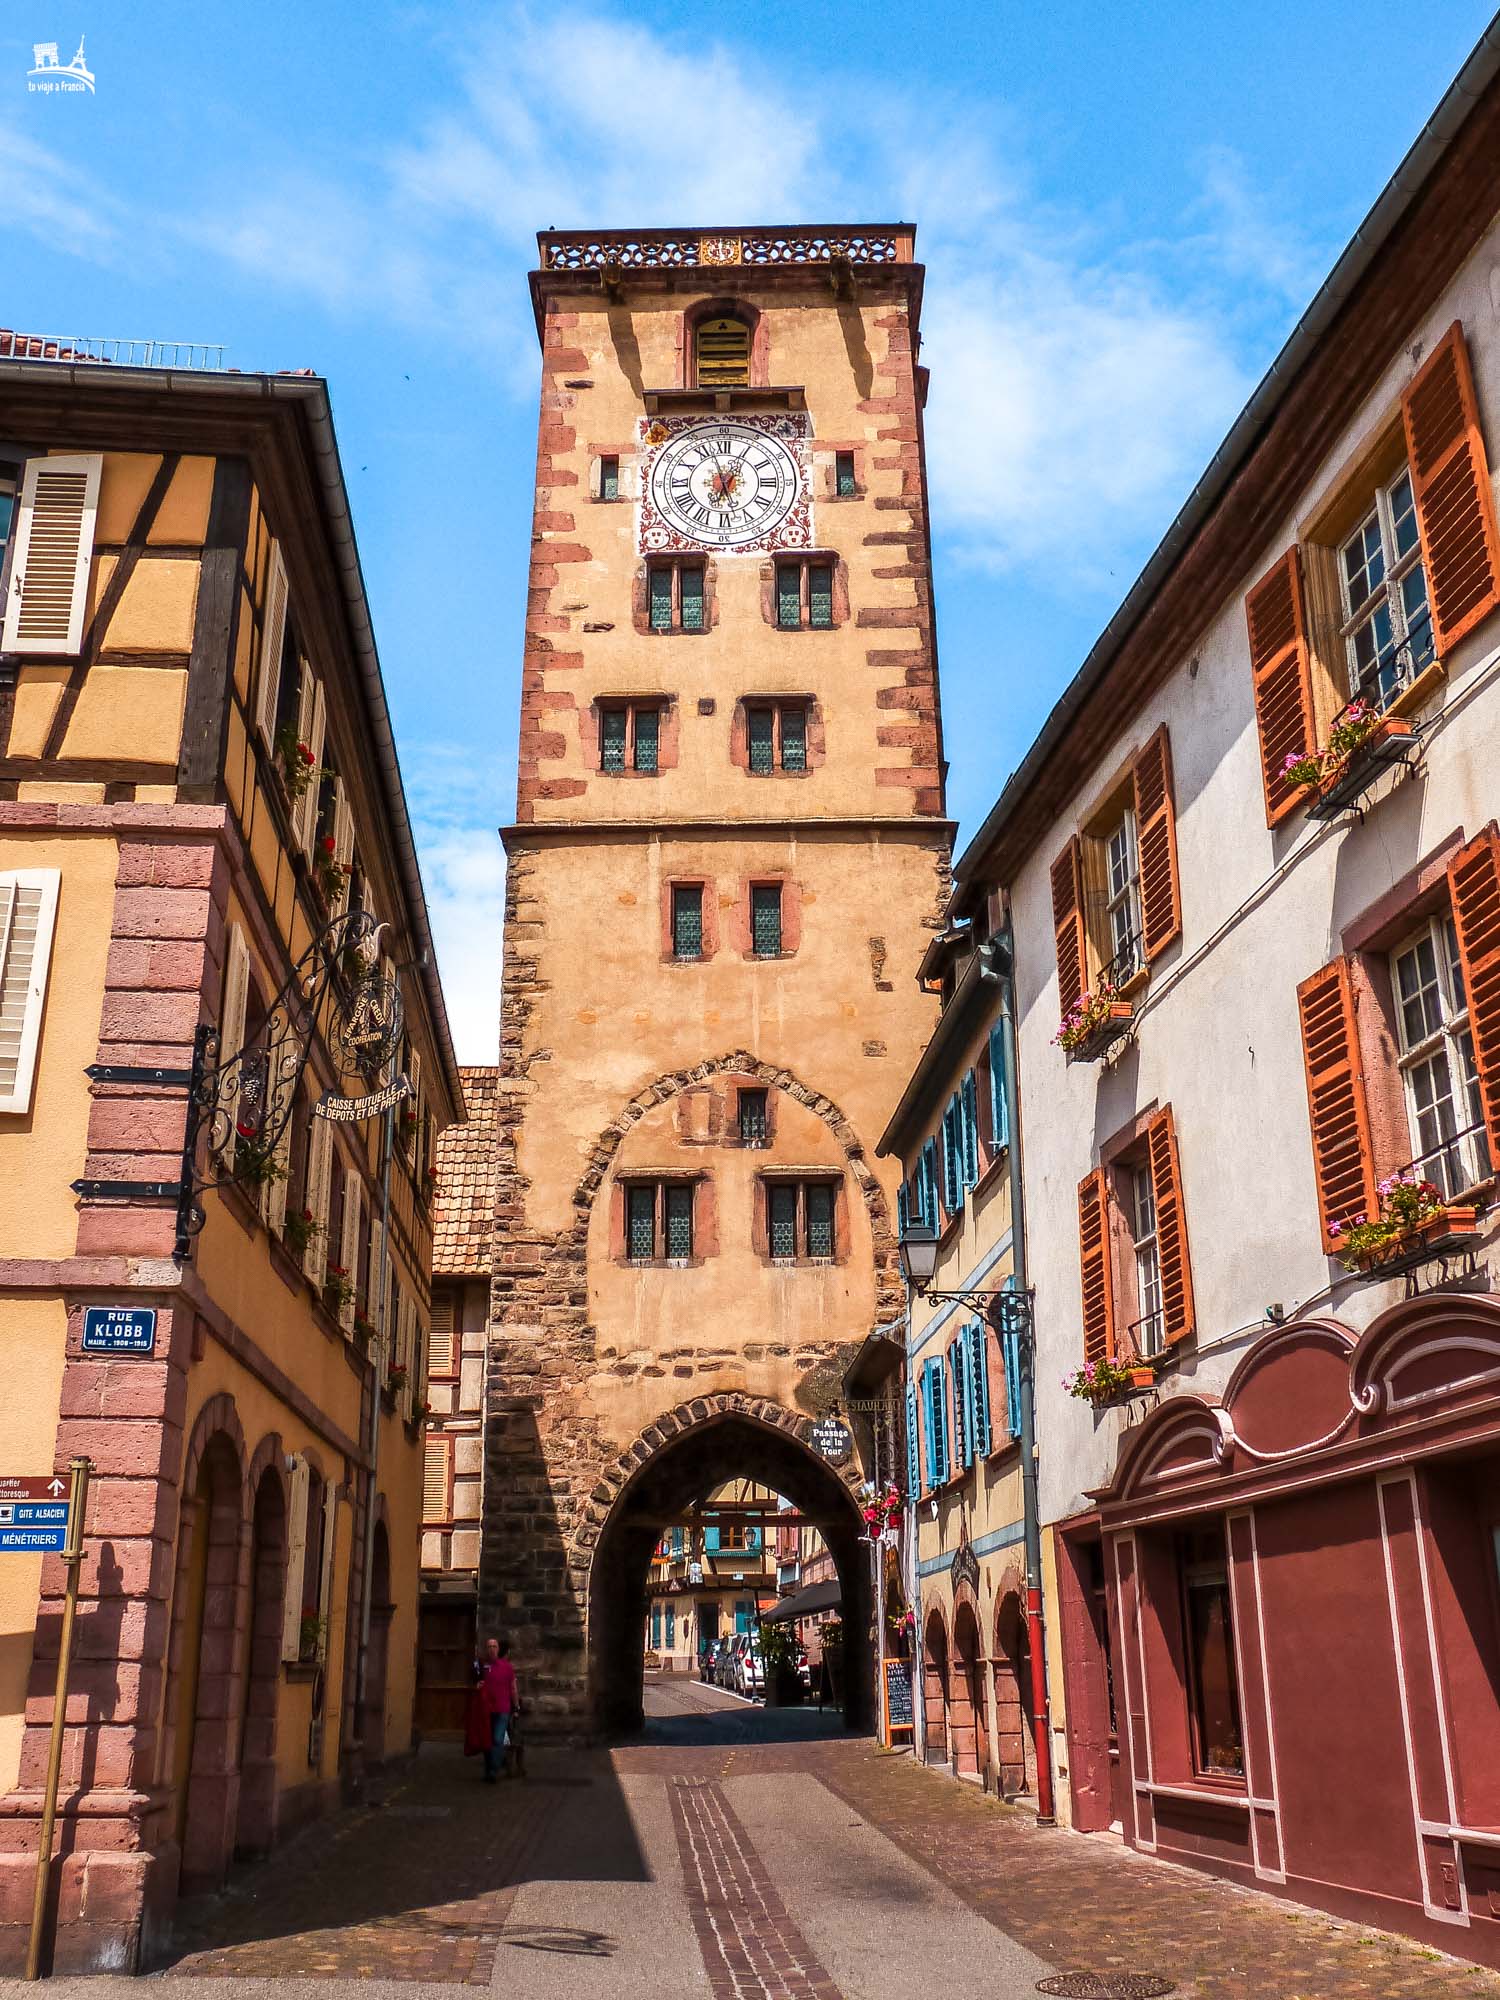 Torre de los Carniceros de Ribeauvillé, que ver cerca de Estrasburgo